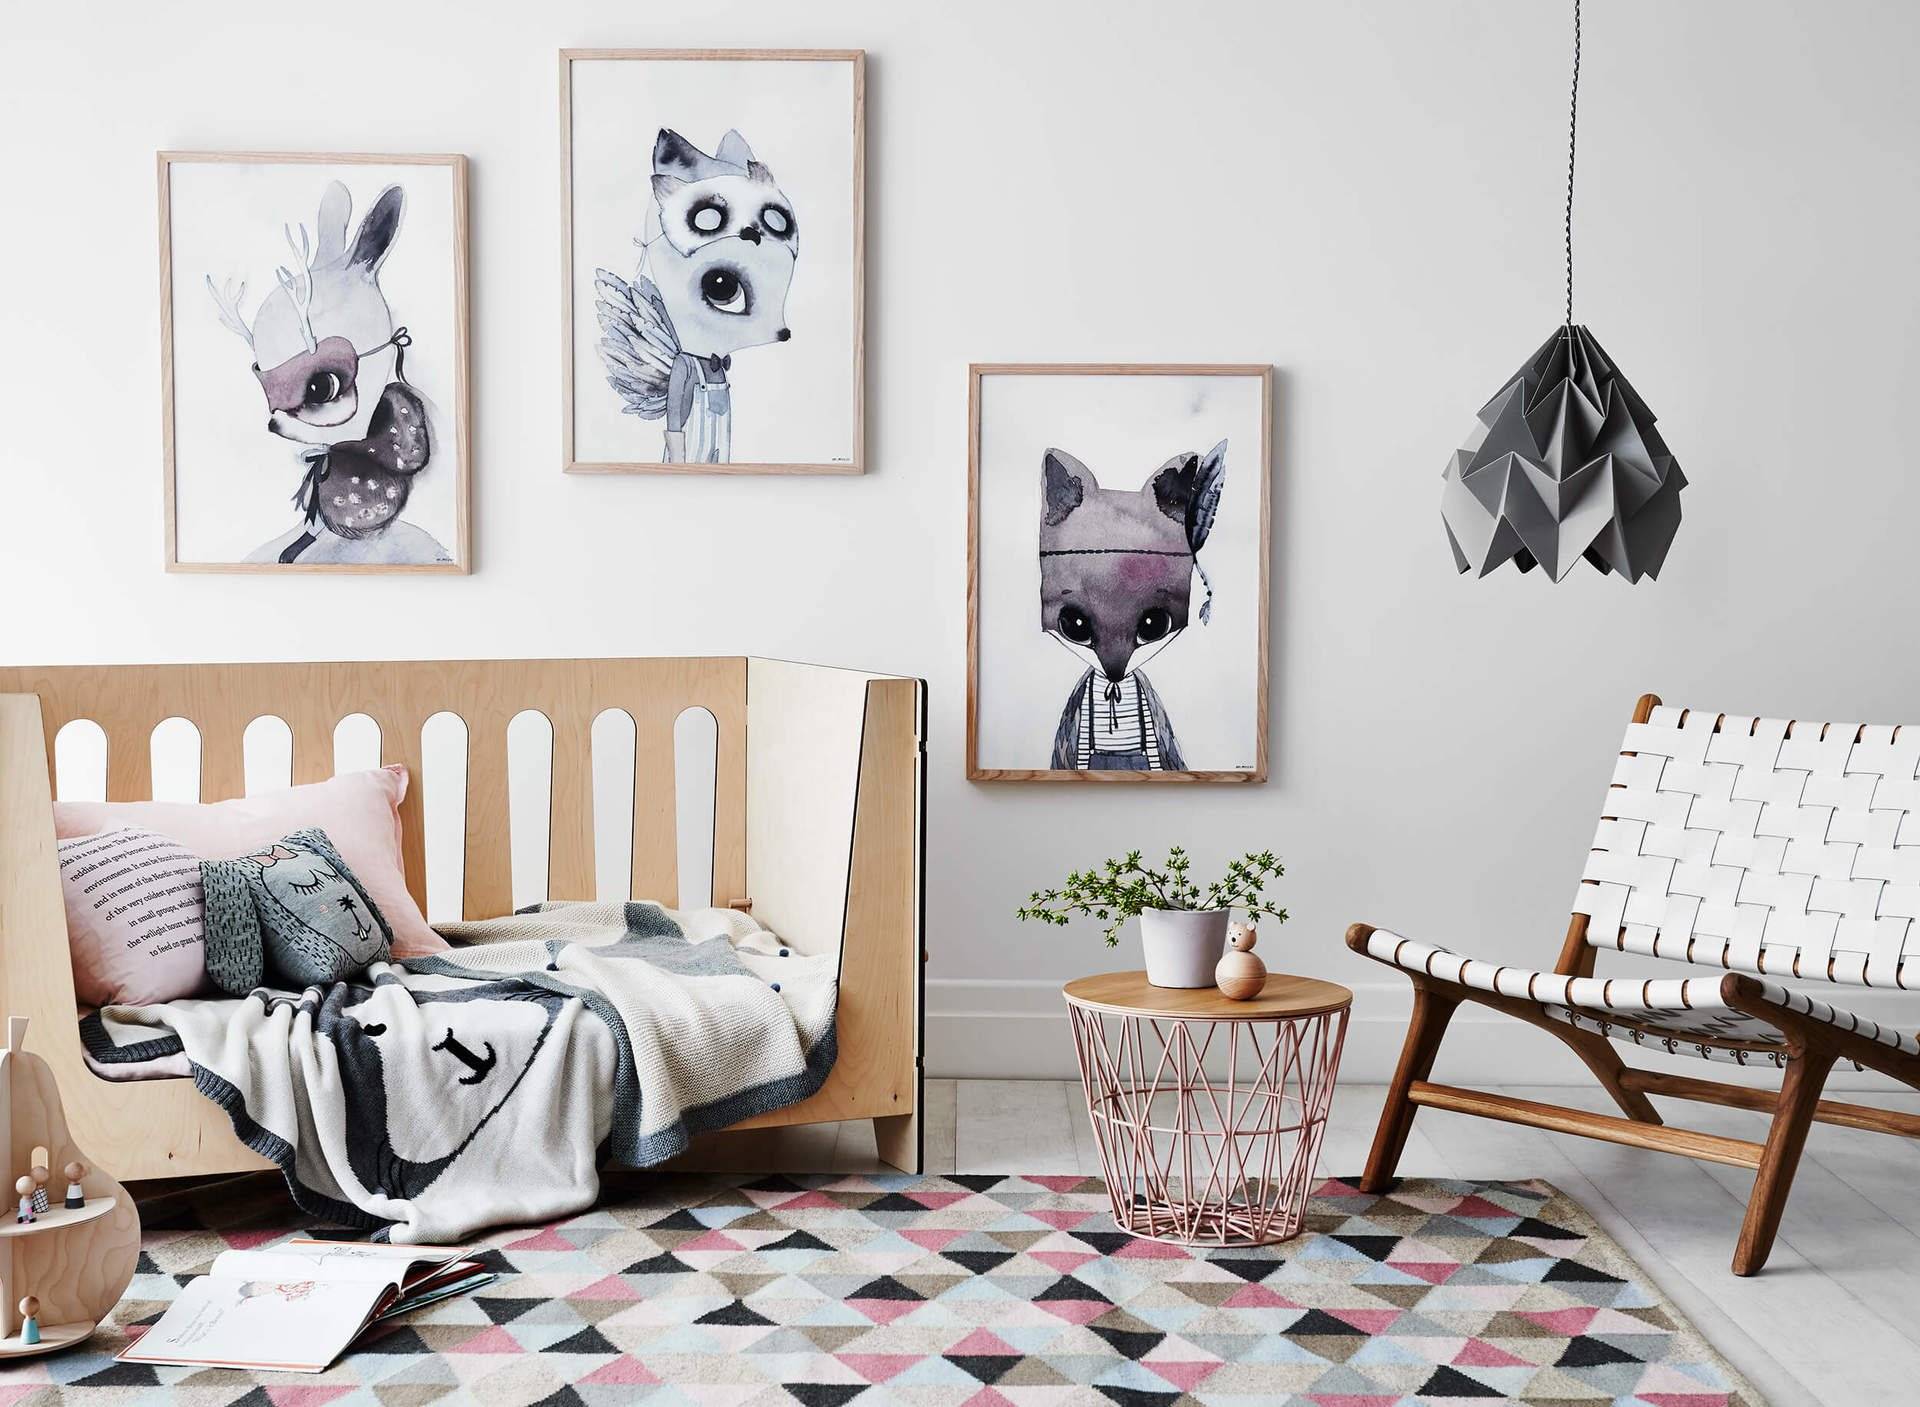 Детская в скандинавском стиле - основа - дизайн детской комнаты